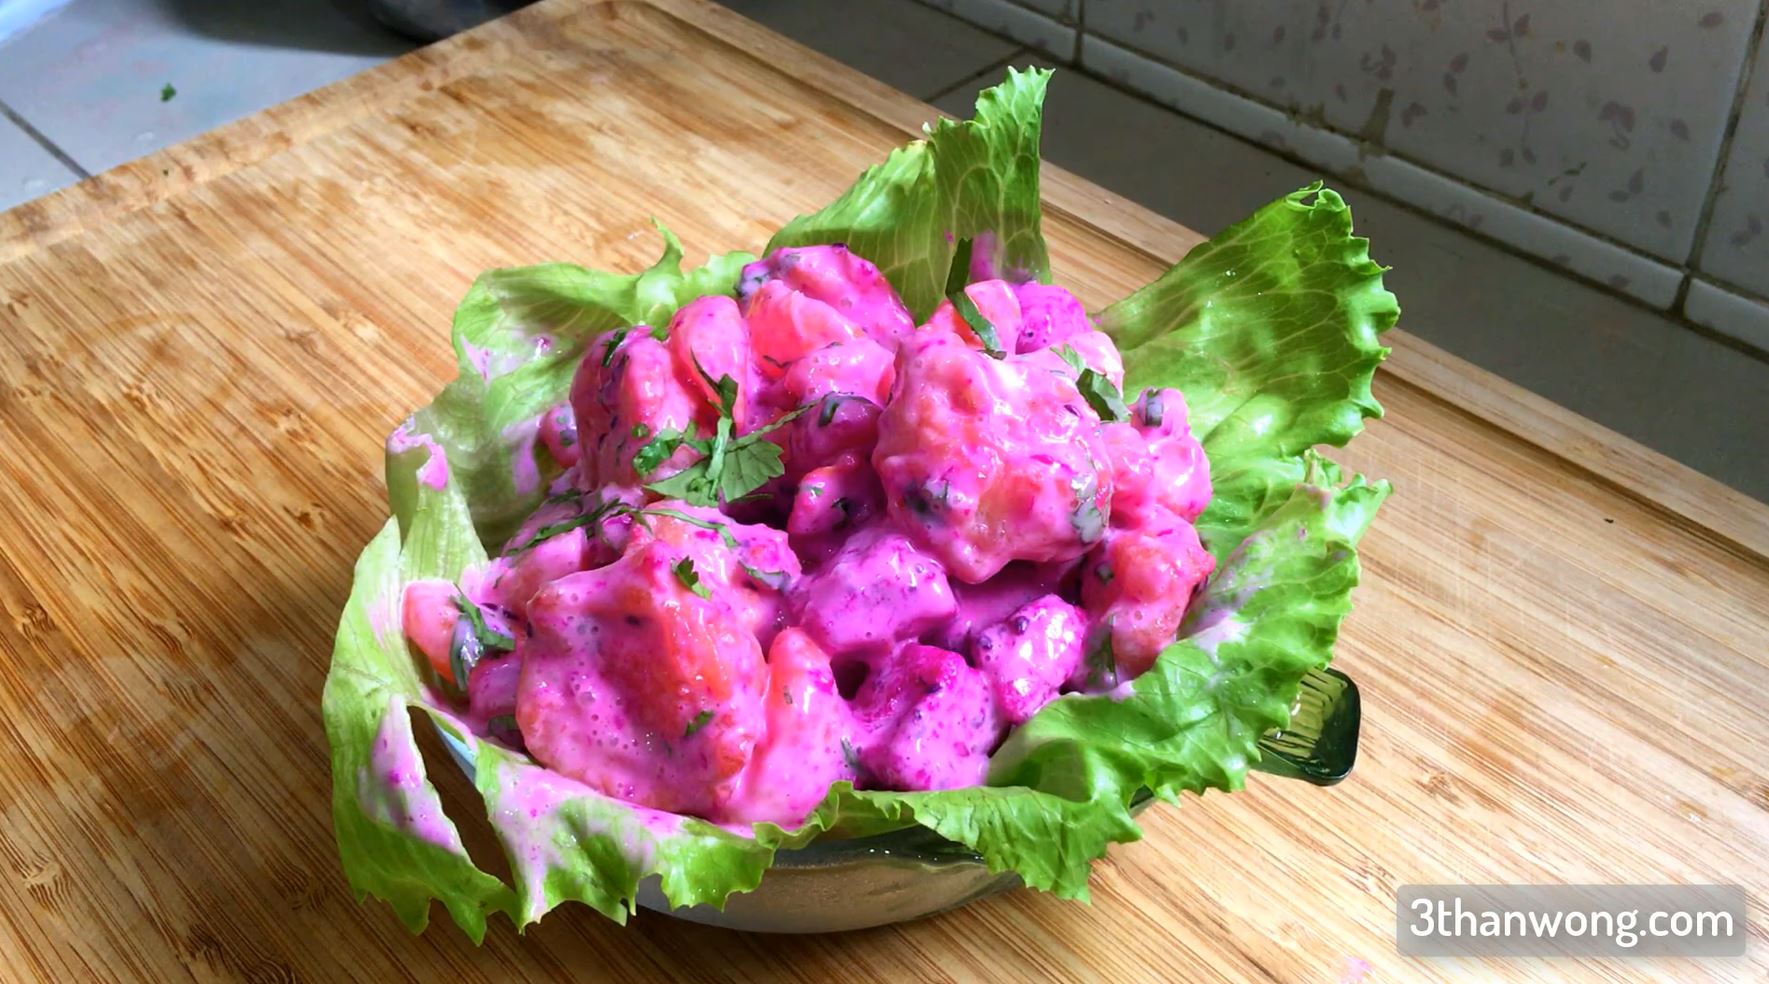 Salad Prawn Recipe Quick and Easy Dim Sum Style